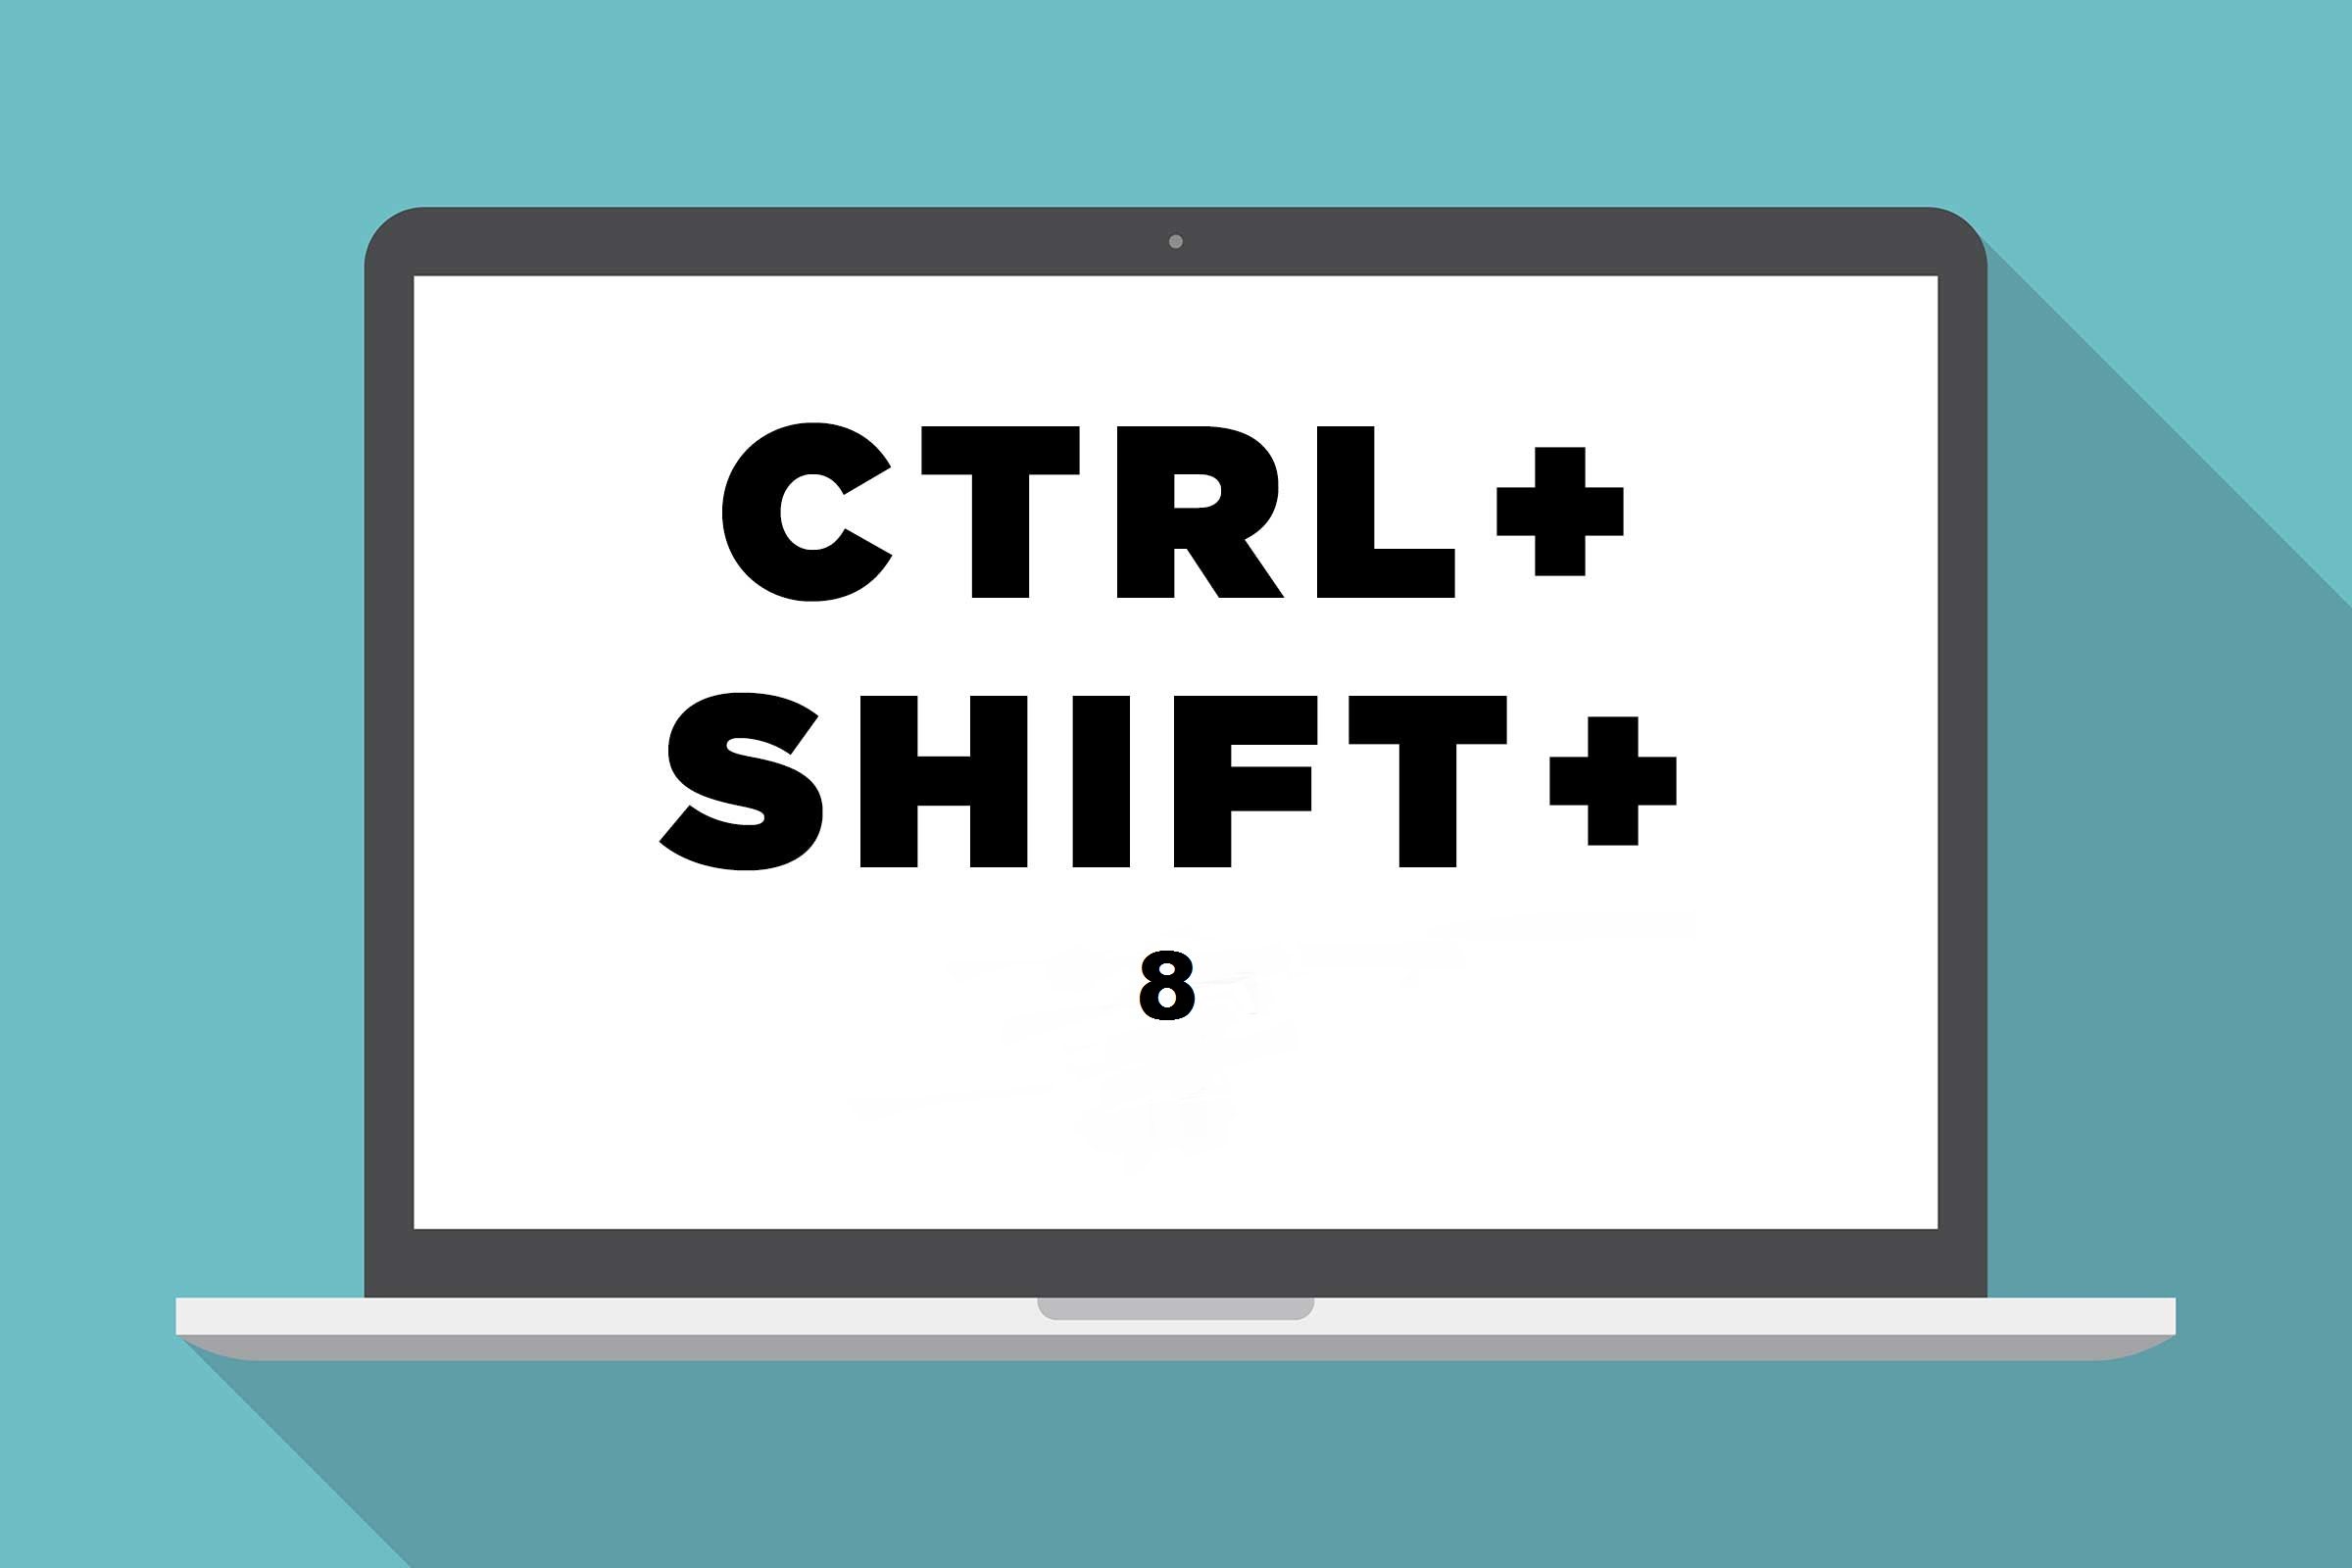 CTRL+shift+8